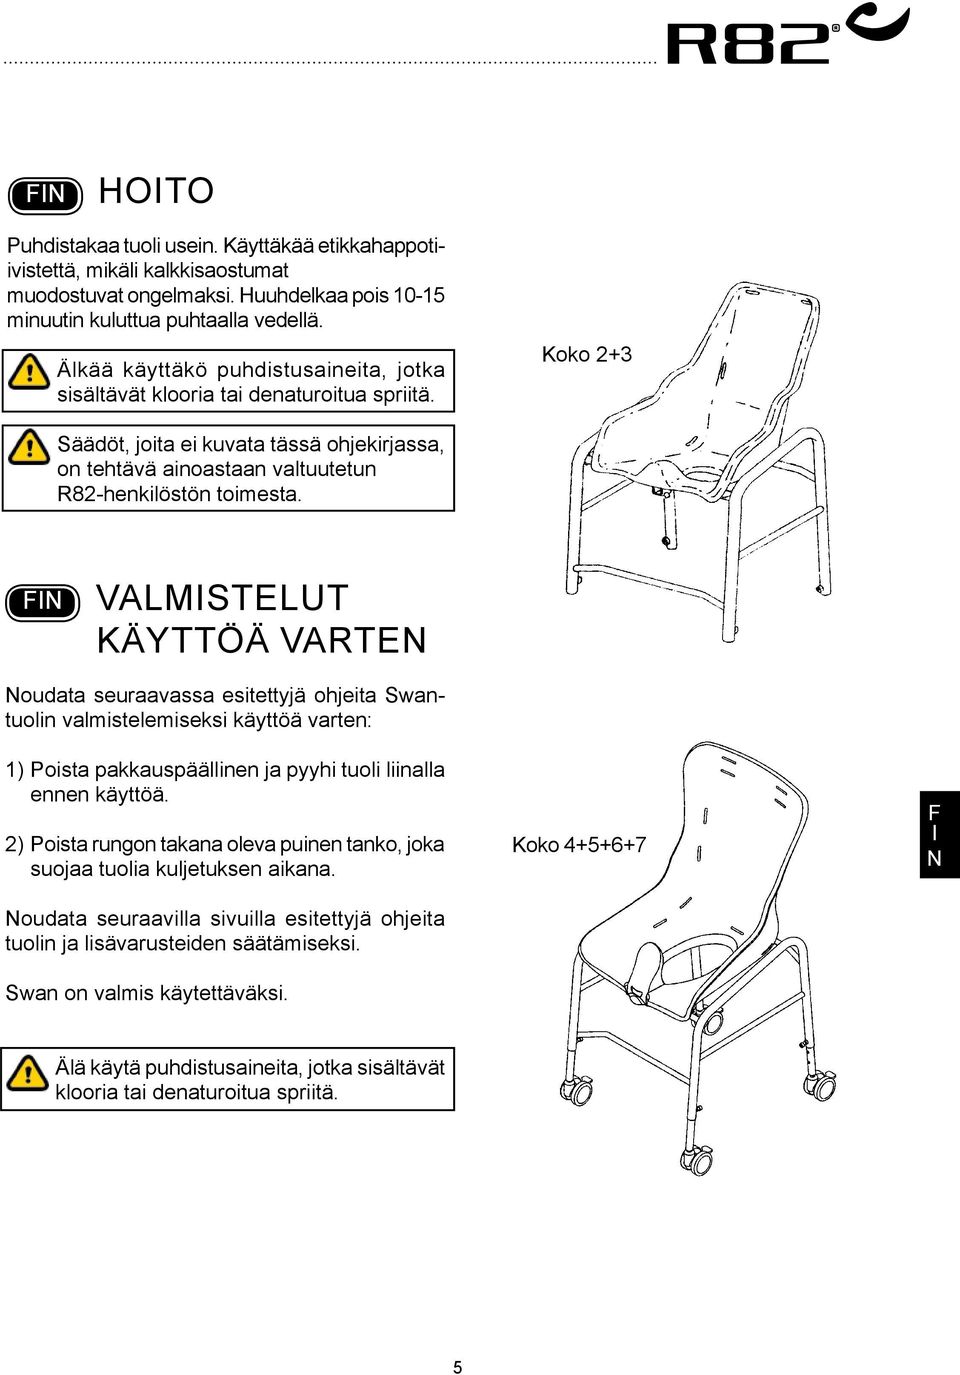 Valmistelut käyttöä varten oudata seuraavassa esitettyjä ohjeita Swantuolin valmistelemiseksi käyttöä varten: 1) Poista pakkauspäällinen ja pyyhi tuoli liinalla ennen käyttöä.